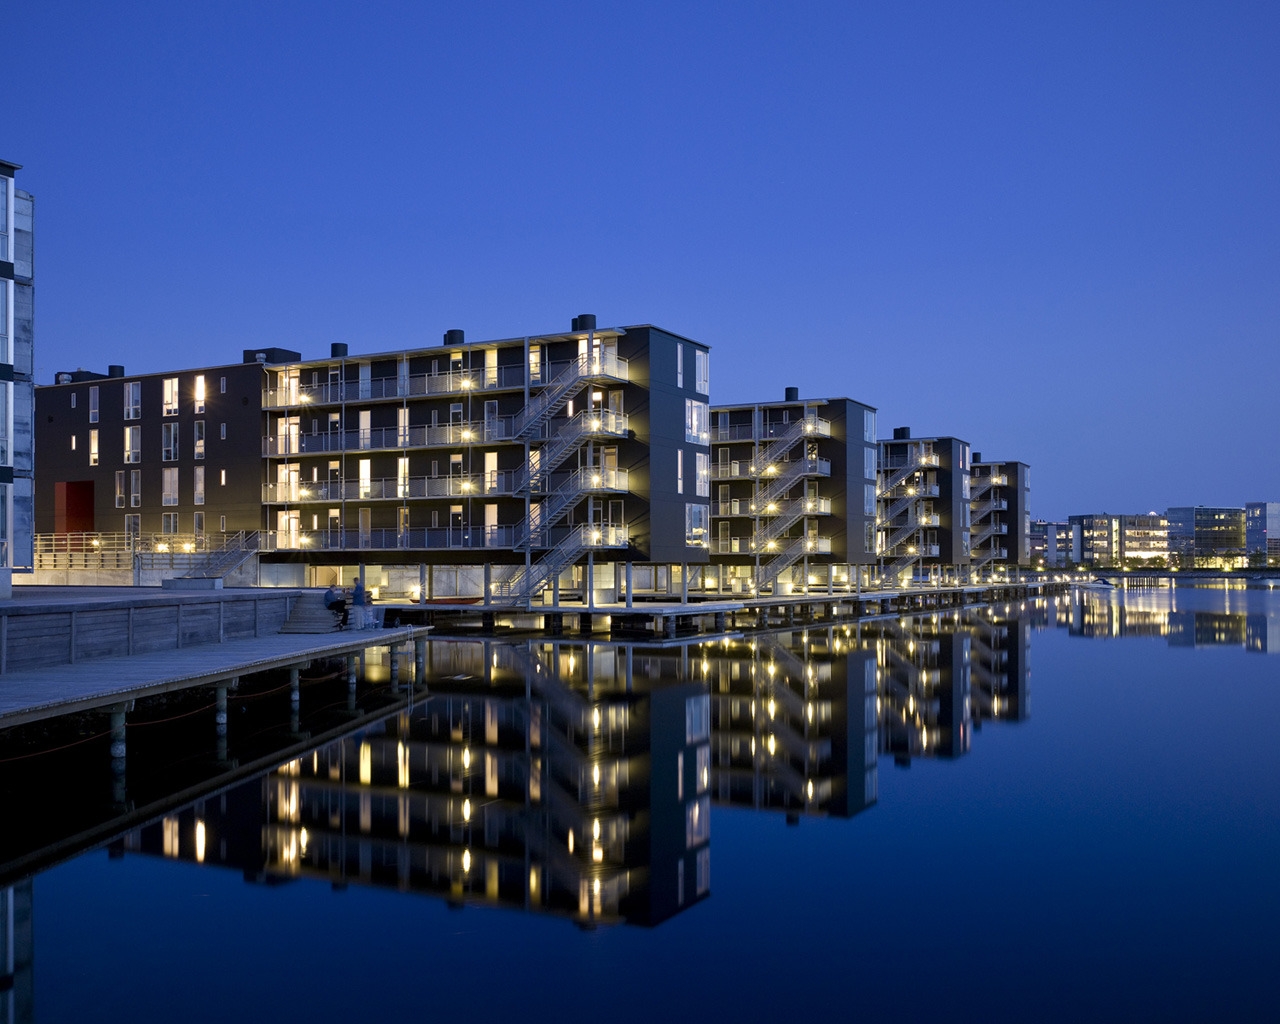 Teglvrkshavnen Block in Copenhagen for 1280 x 1024 resolution